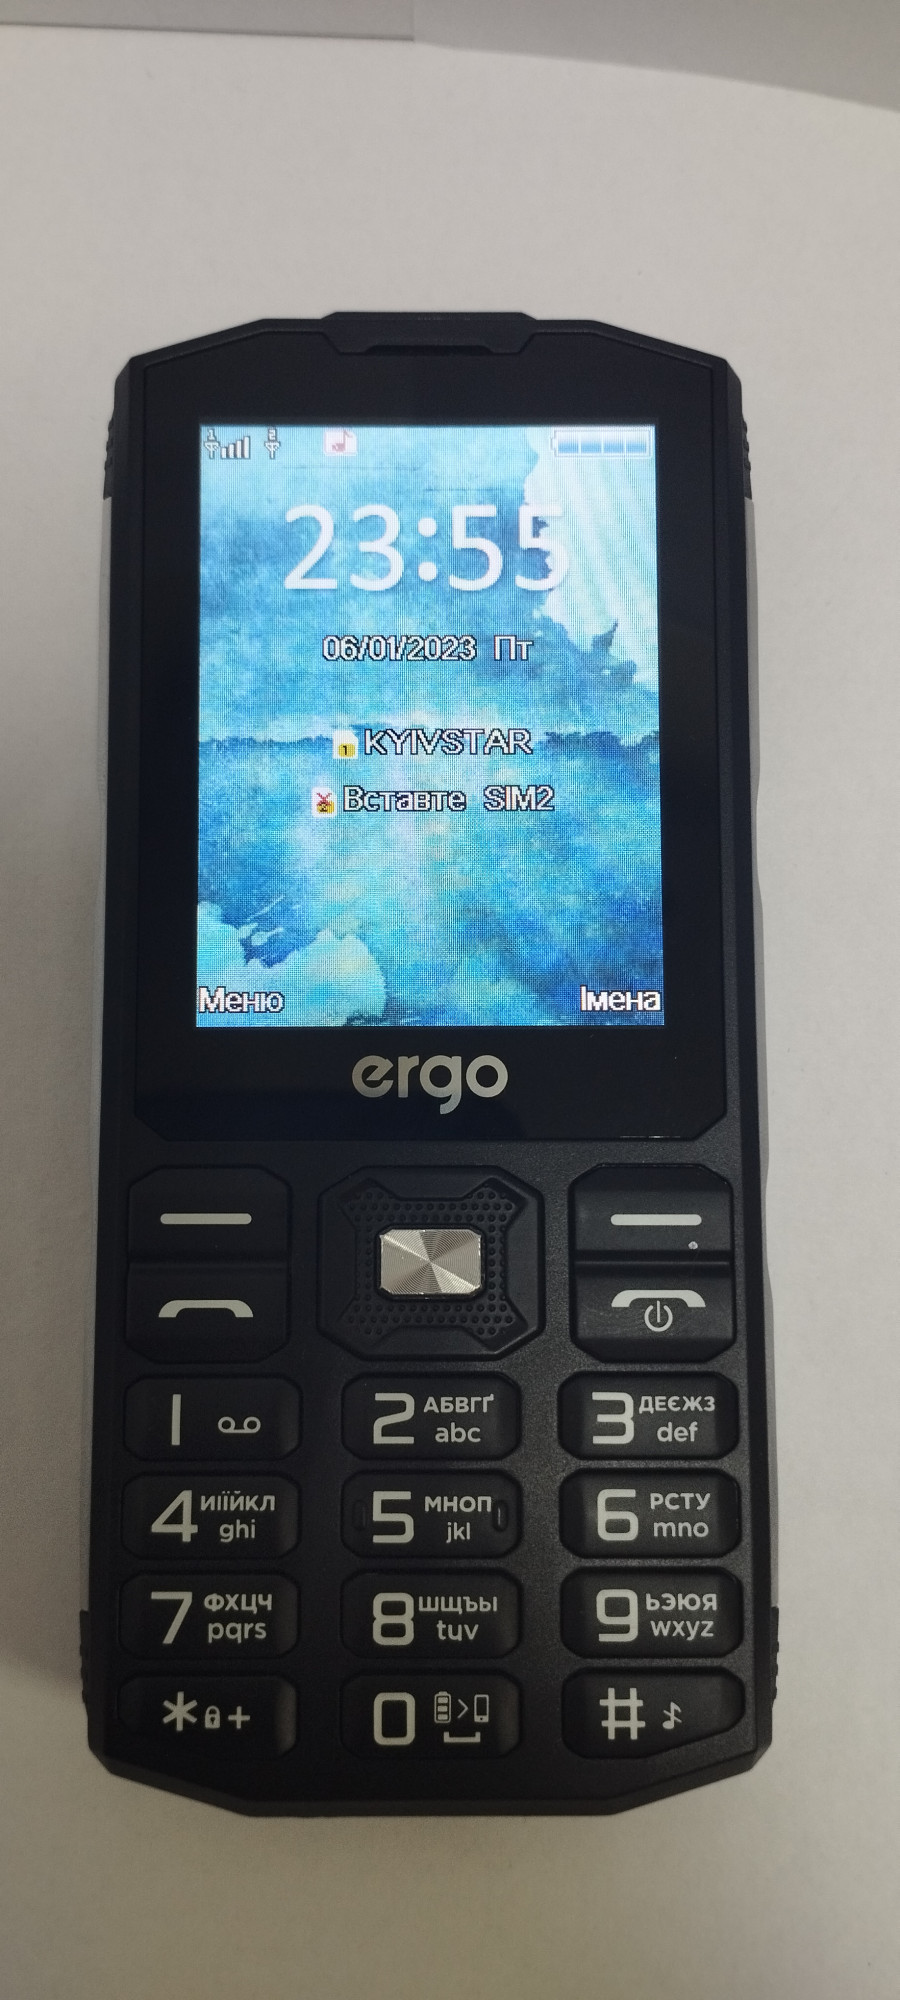 Ergo E282 Dual Sim 0